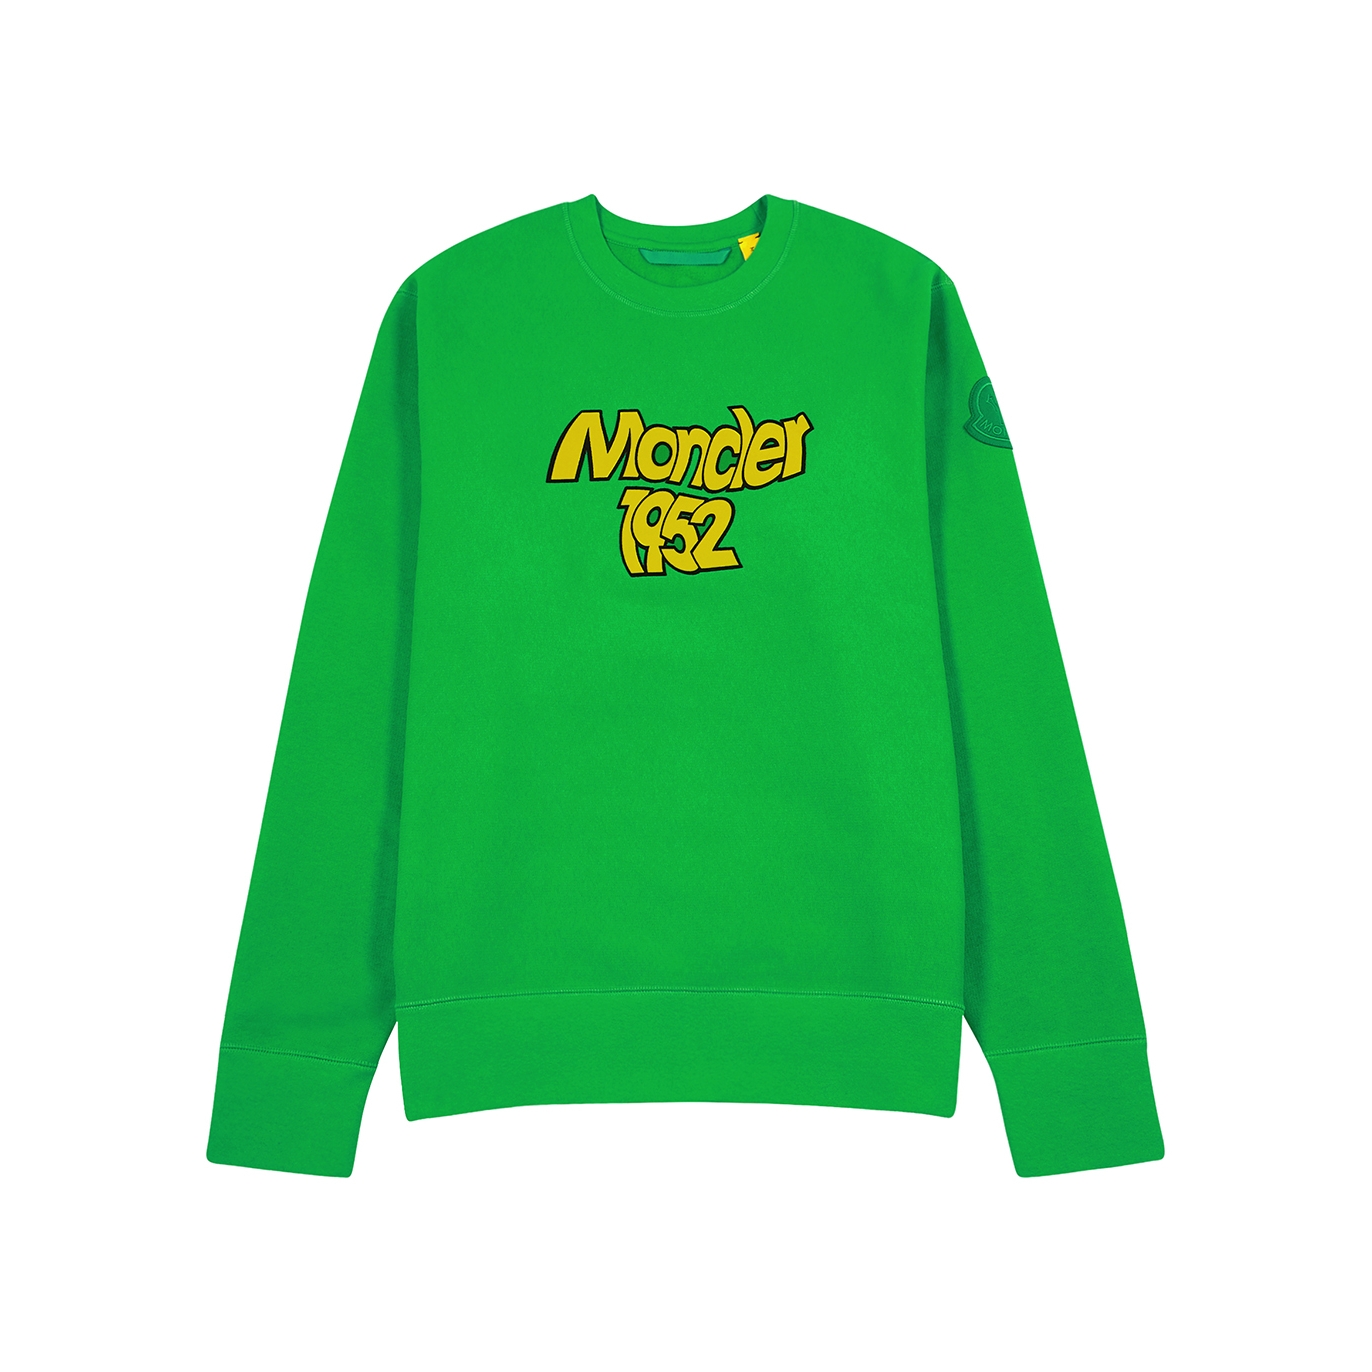 Moncler Genius 2 Moncler 1952 Green Logo Cotton Sweatshirt